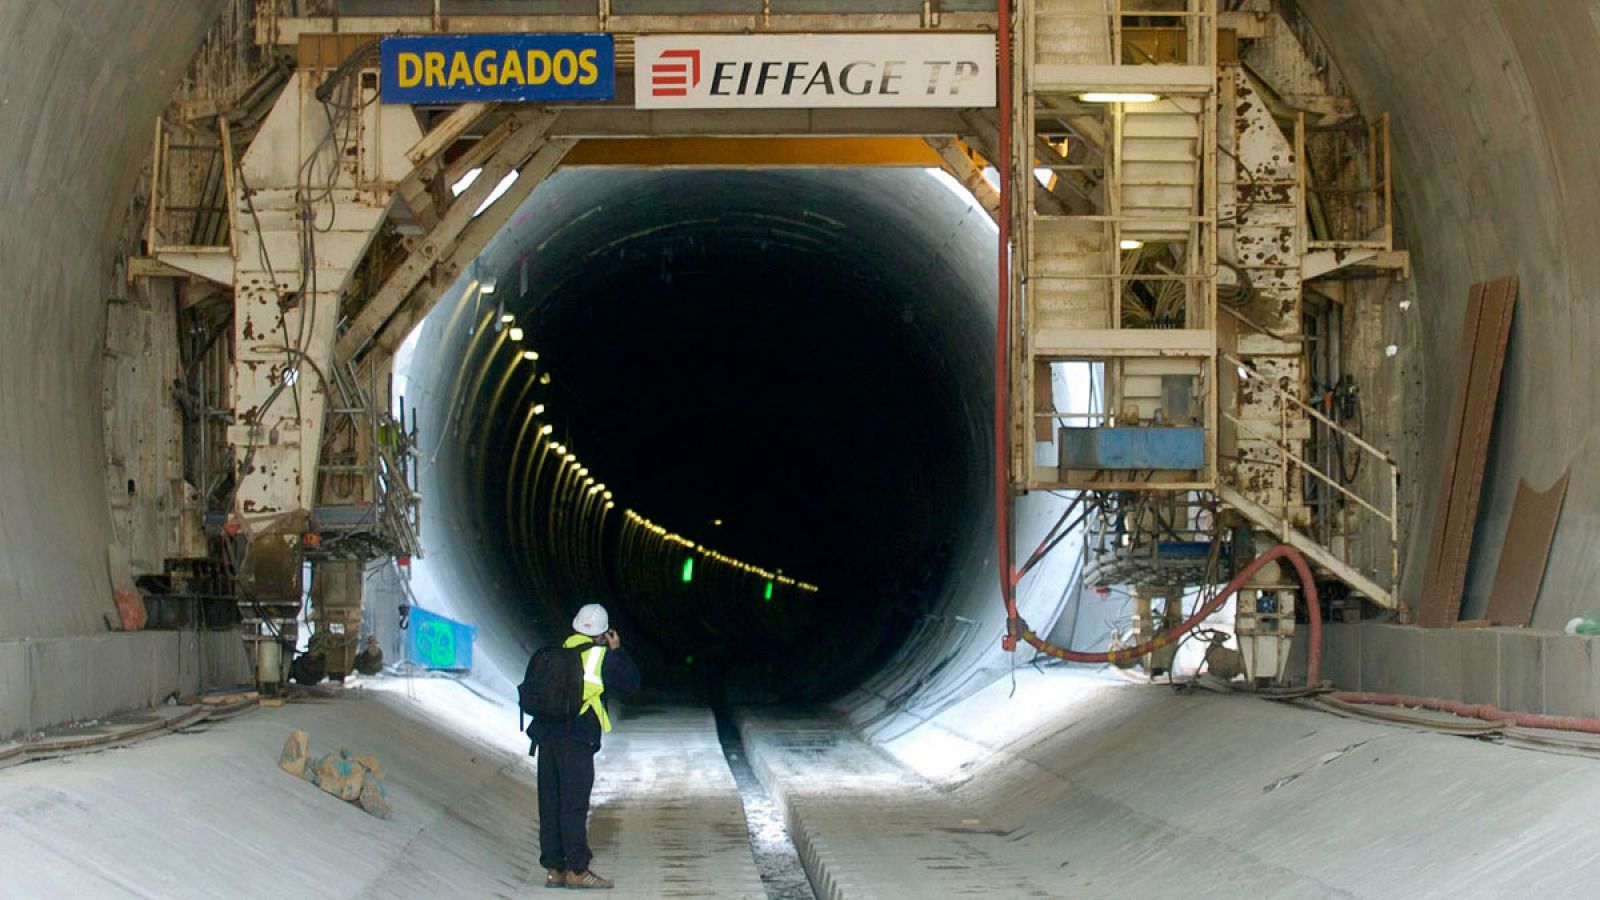 Un operario fotografía el túnel de Pertús, que forma parte del trazado de la línea ferroviaria de alta velocidad de Figueres a Perpiñán, en una imagen de archivo